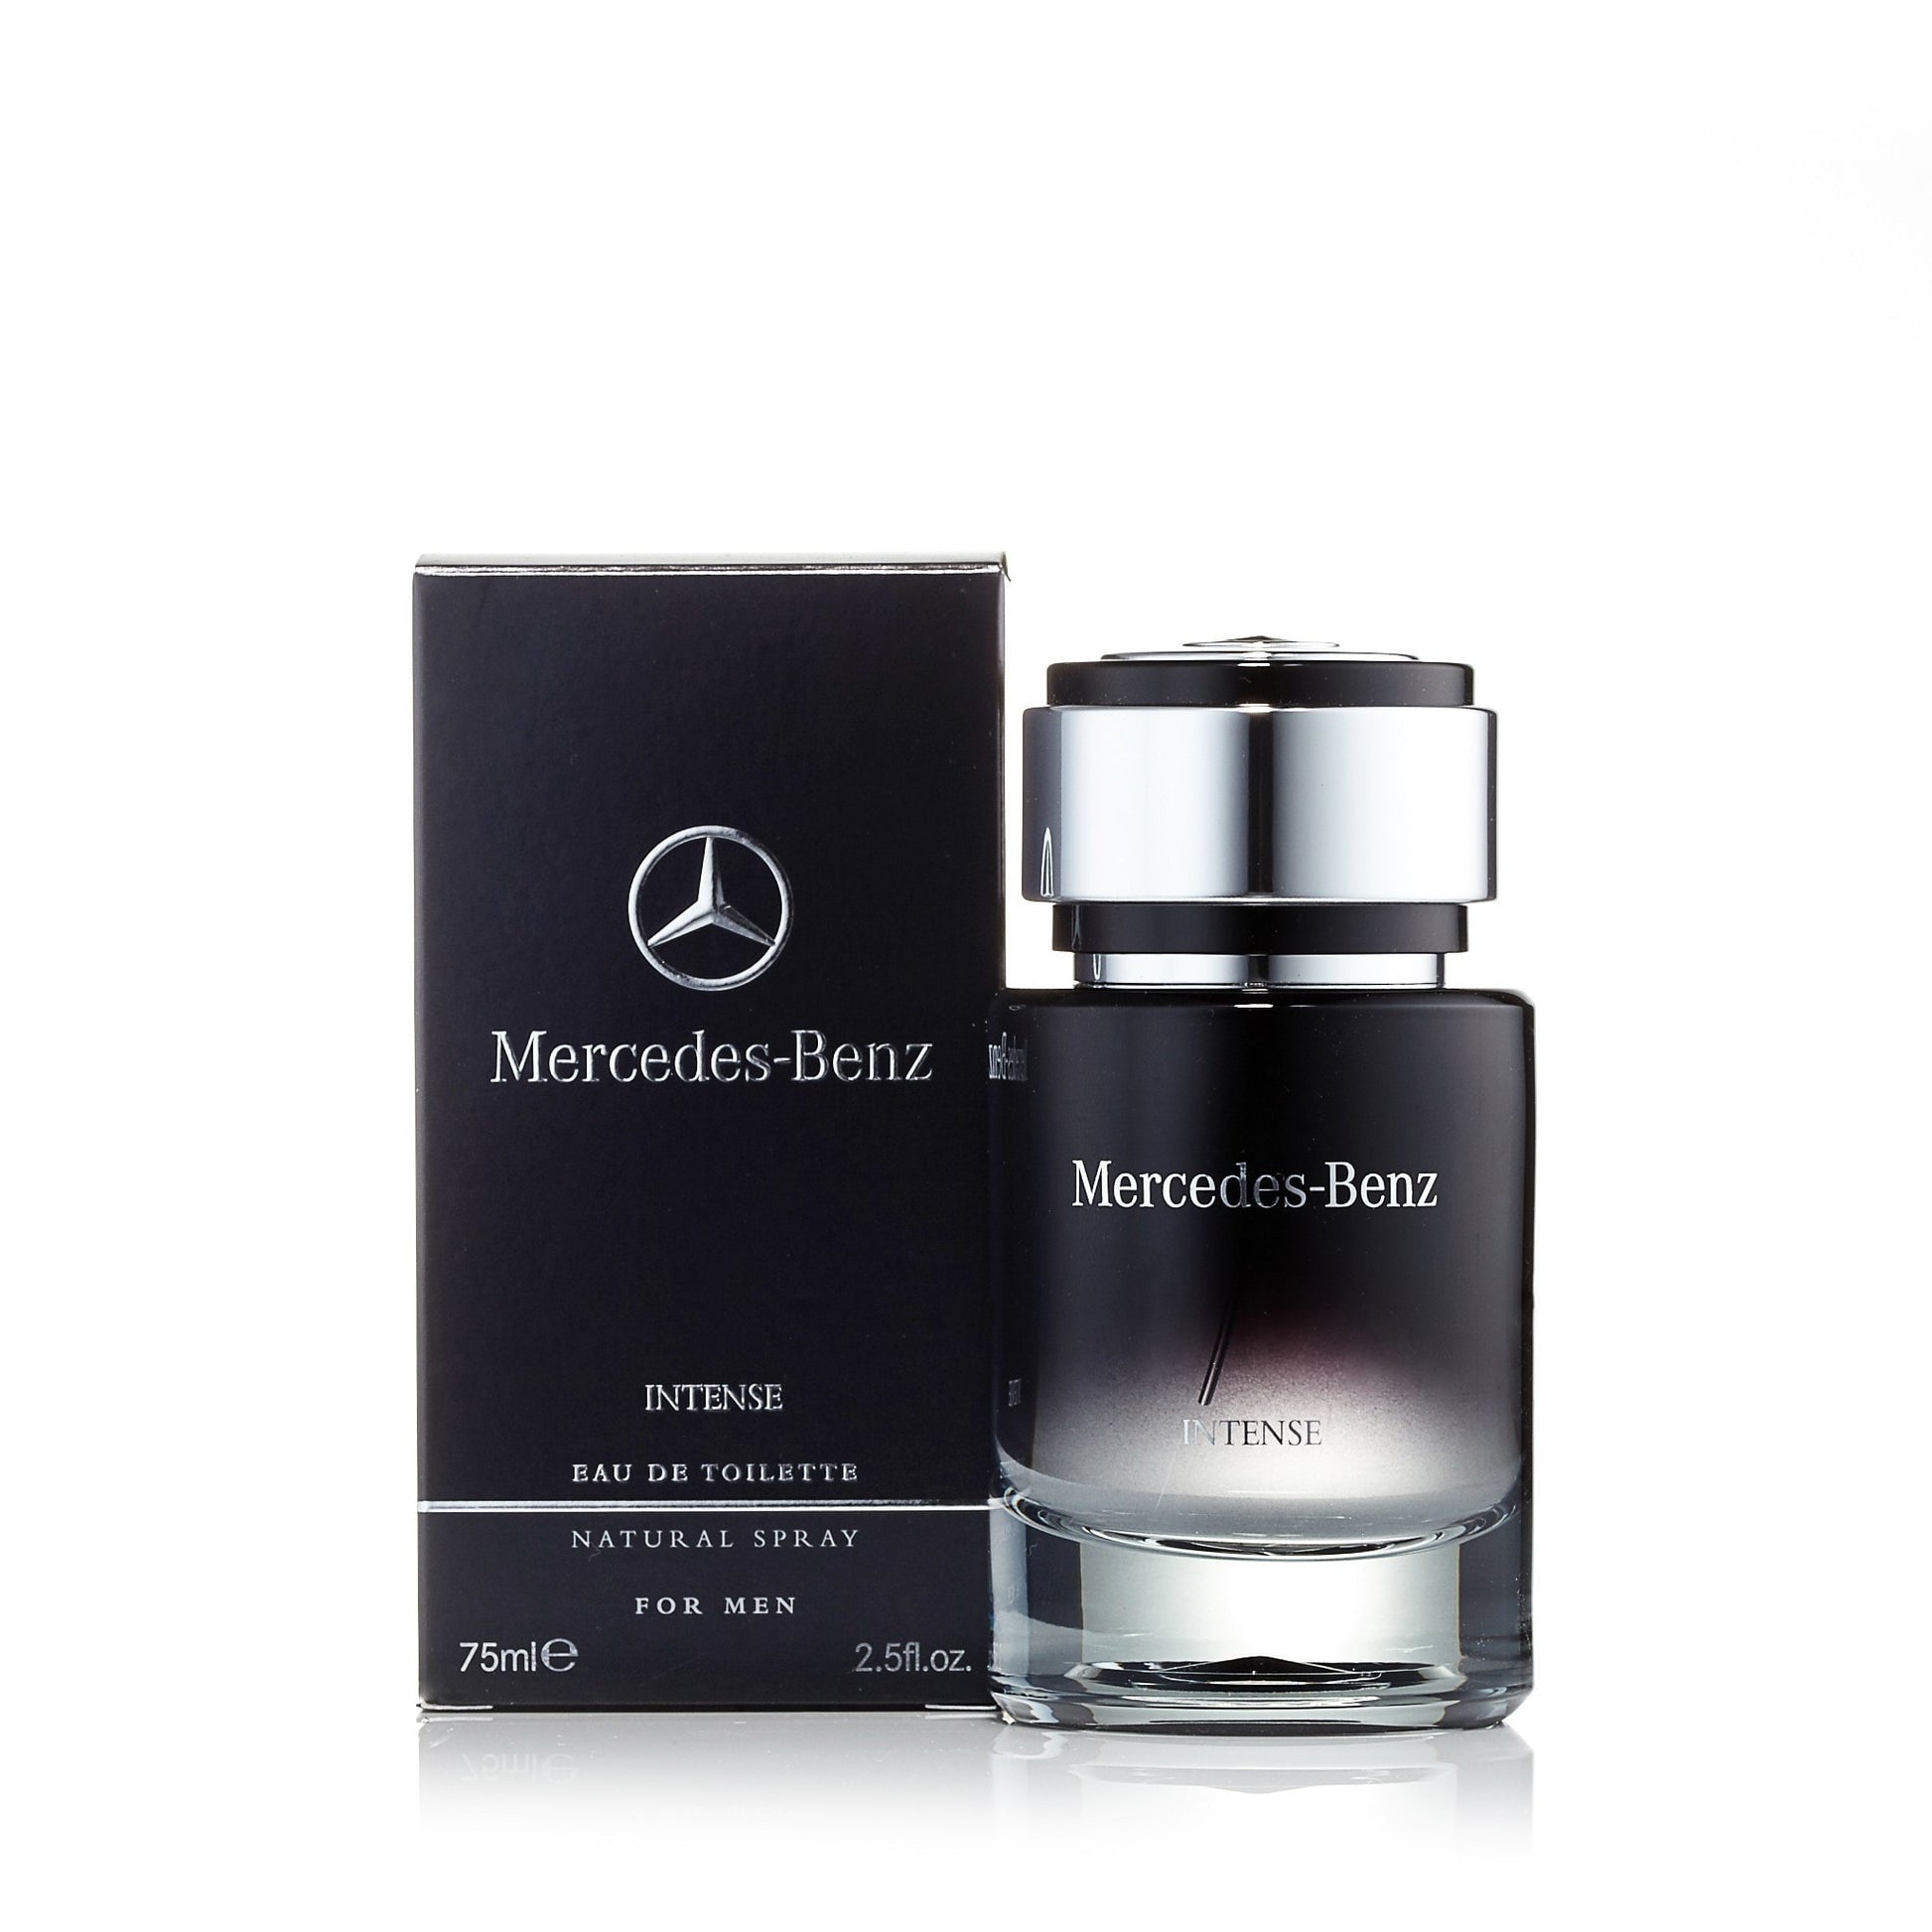 Intense Eau de Toilette Spray for Men by Mercedes-Benz 2.0 oz. Click to open in modal